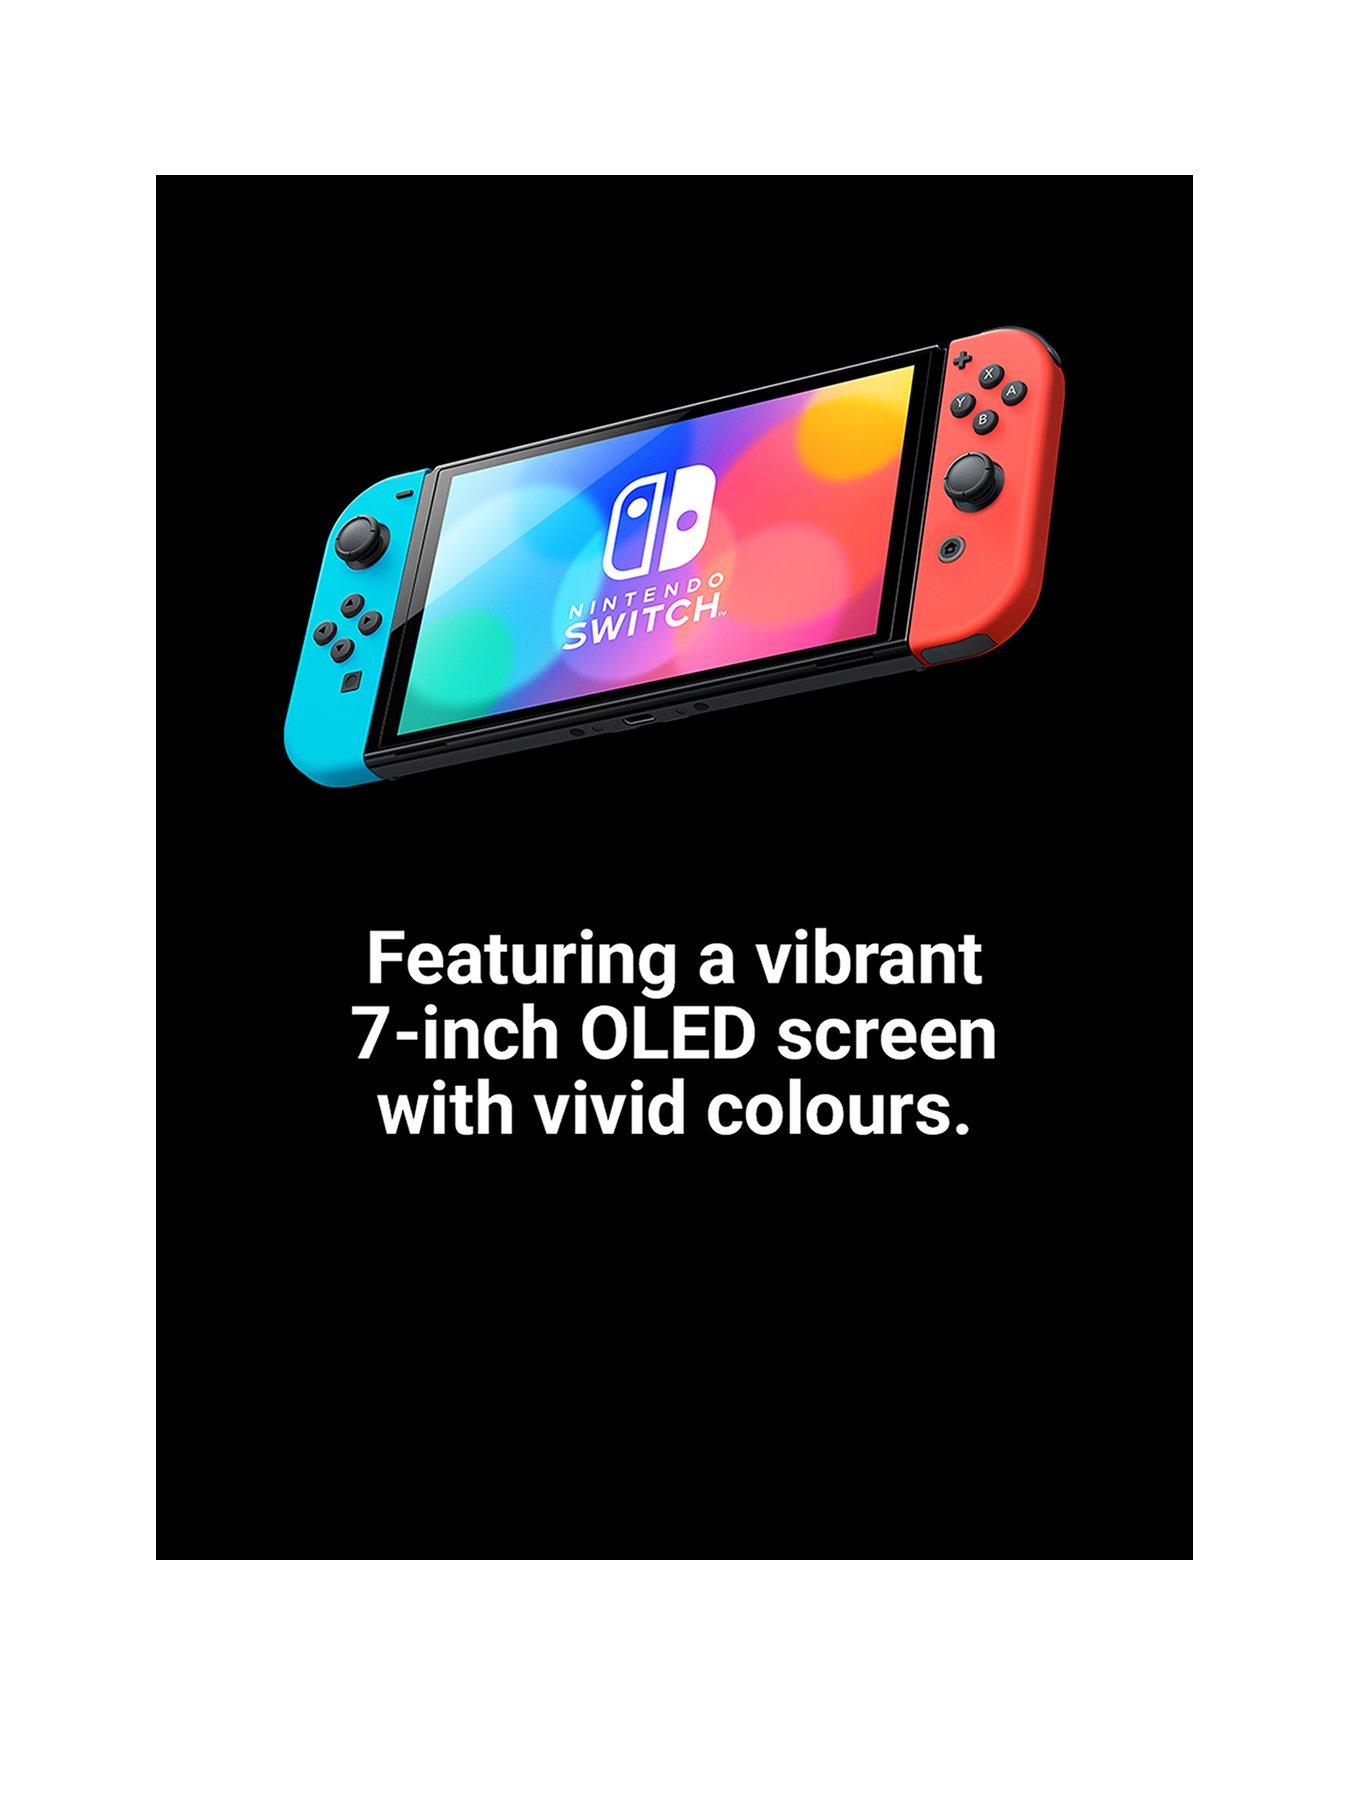 Nintendo Switch – OLED Model w/ Neon Red & Neon Blue Joy-Con Multi